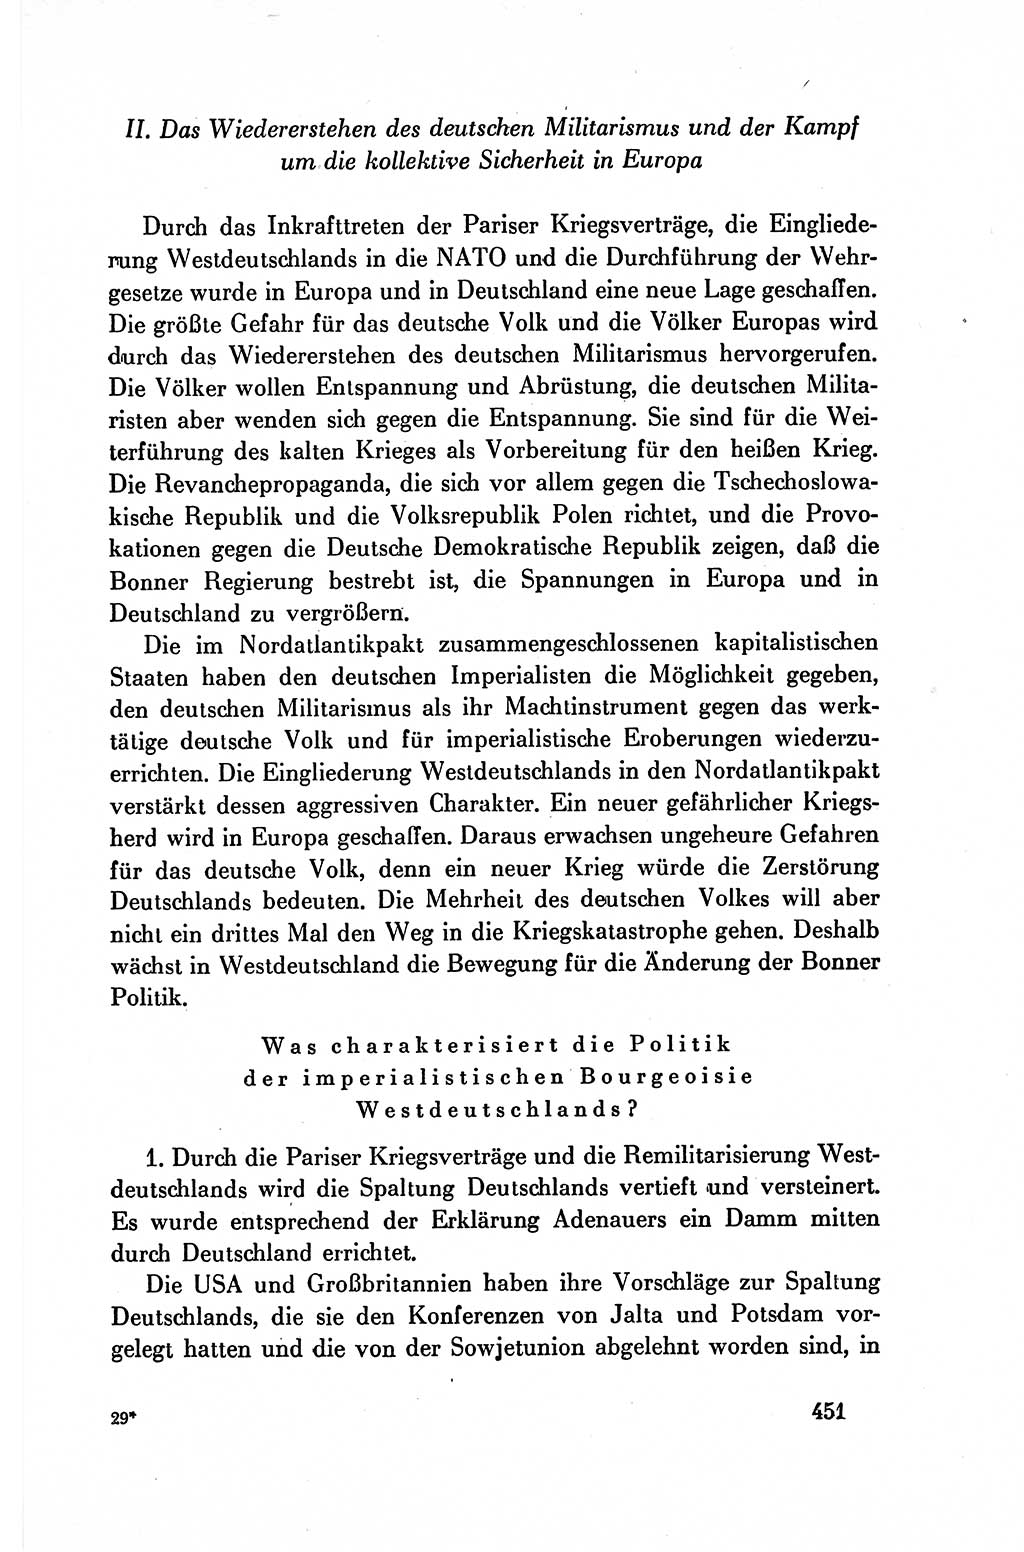 Dokumente der Sozialistischen Einheitspartei Deutschlands (SED) [Deutsche Demokratische Republik (DDR)] 1954-1955, Seite 451 (Dok. SED DDR 1954-1955, S. 451)